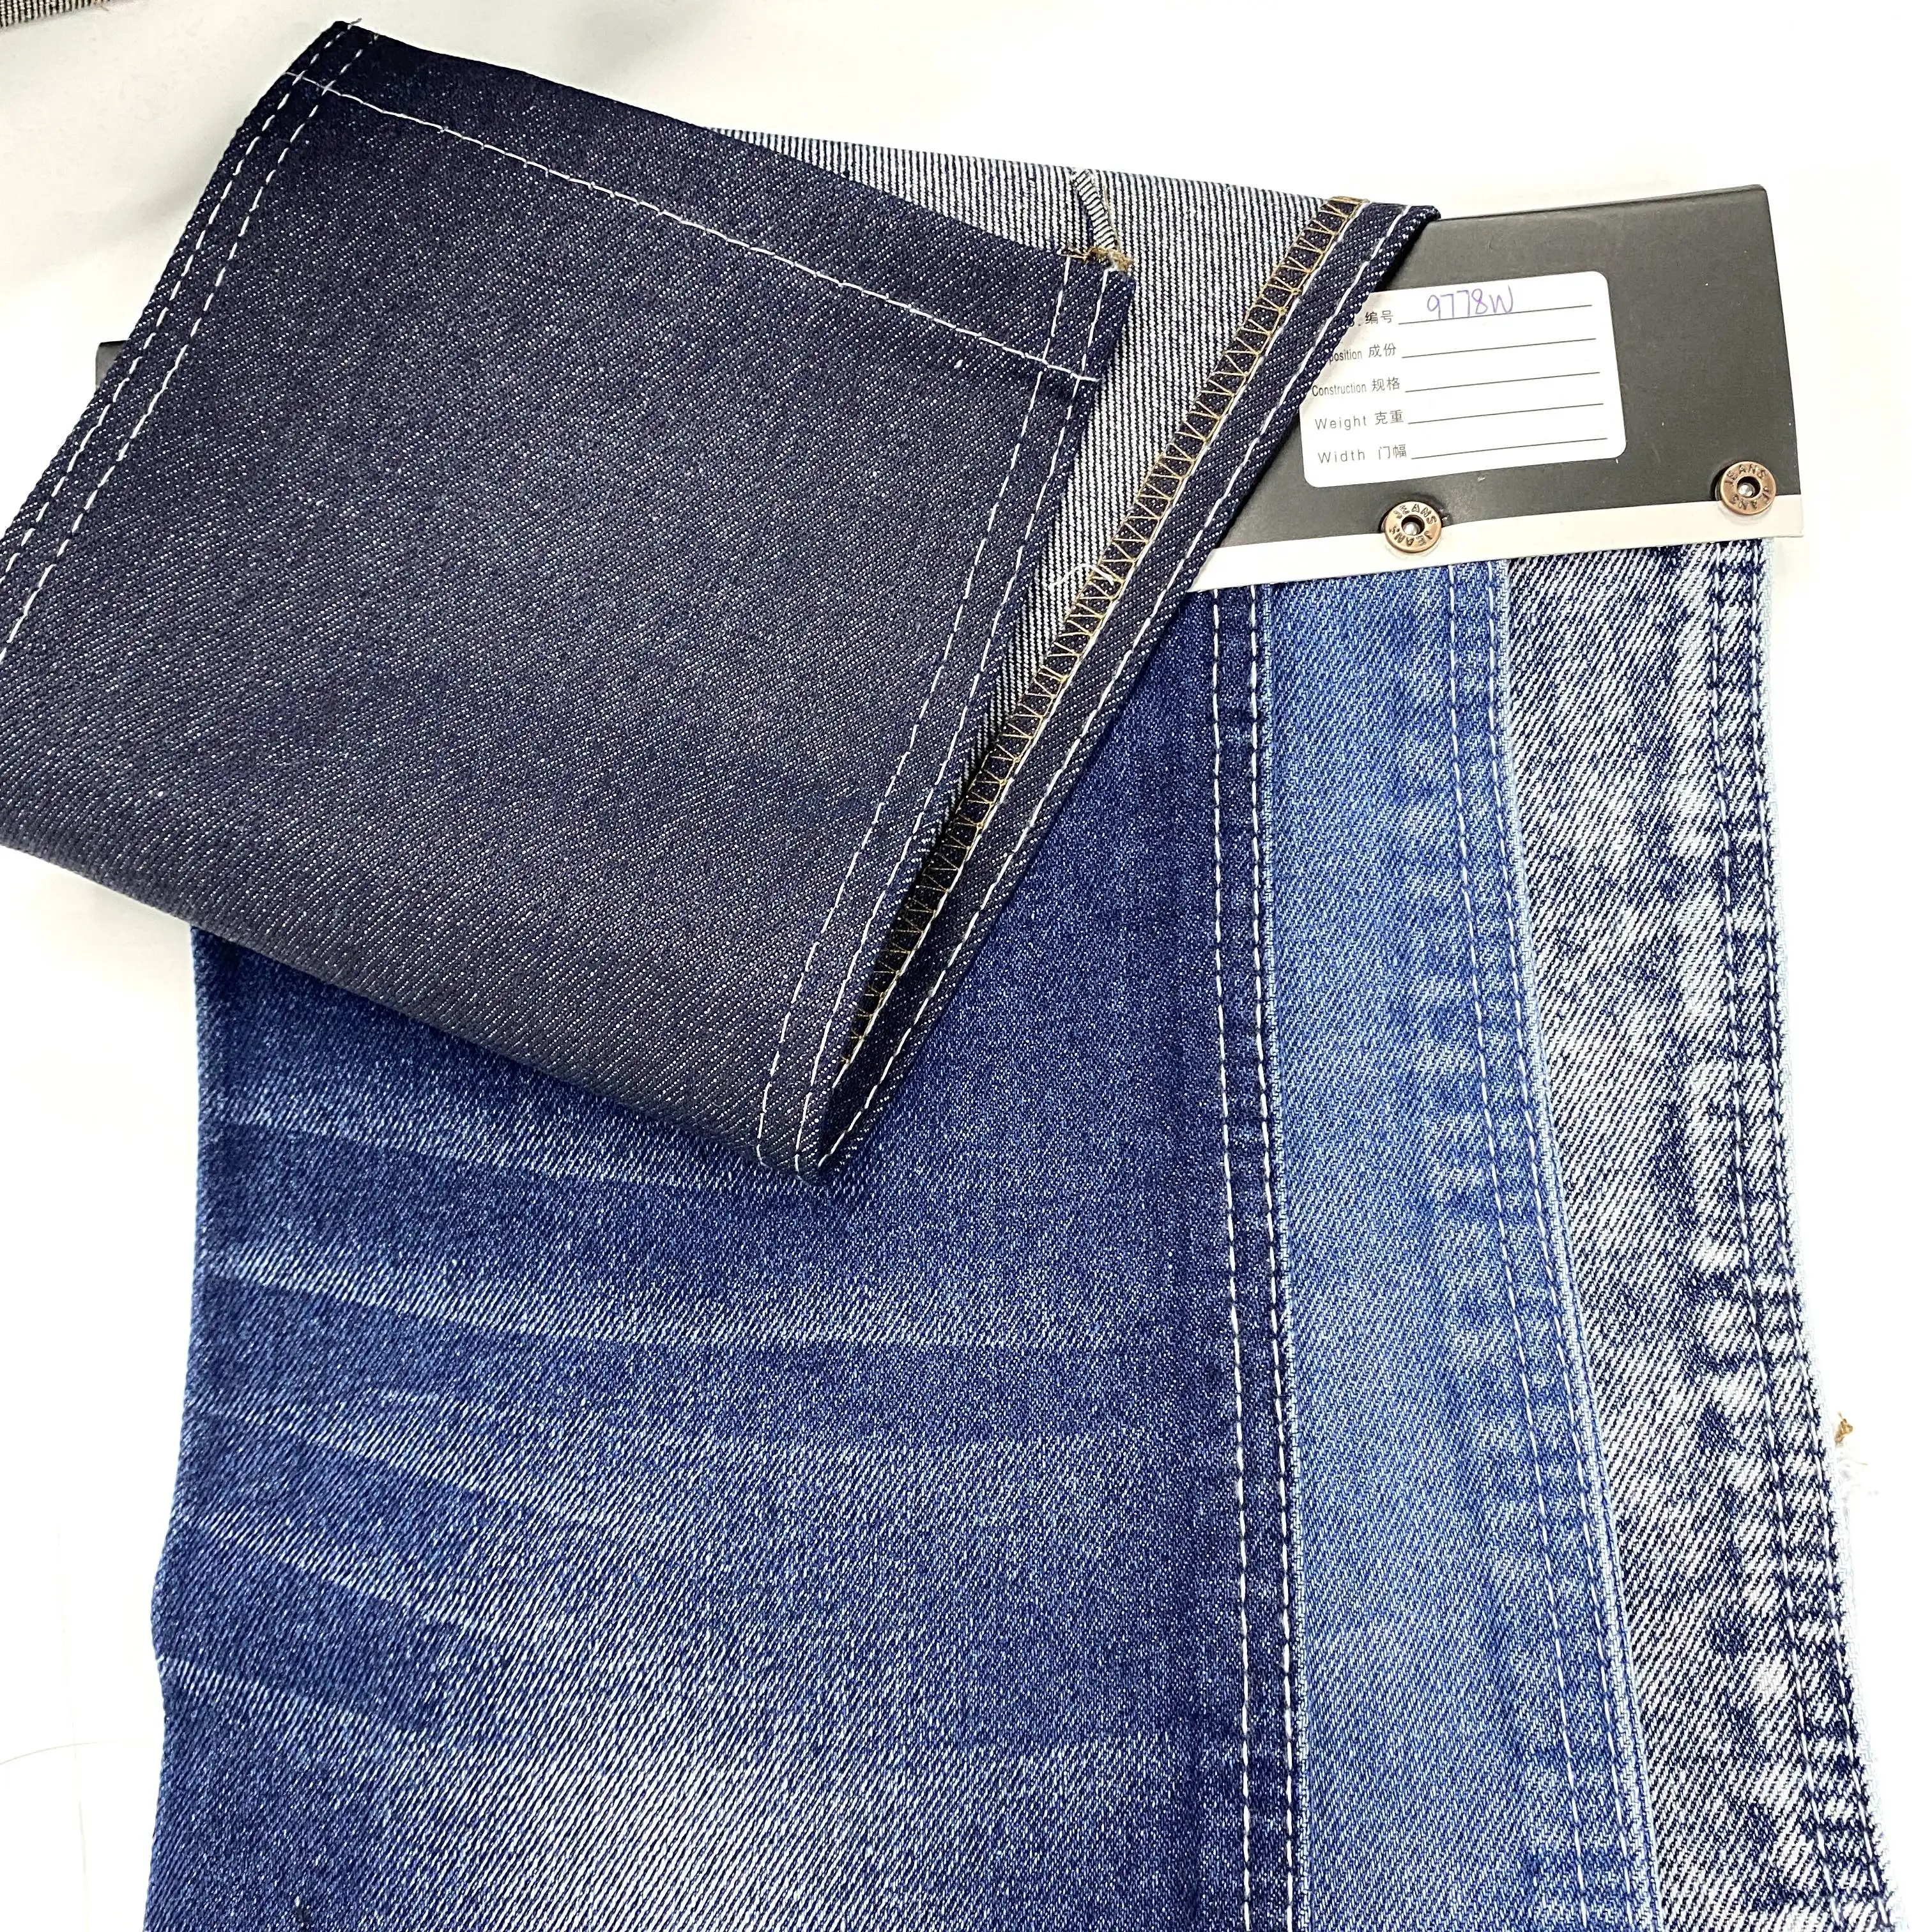 Rouleaux bon marché liquidation professionnelle Jean coton Tc Denim tissu pantalon tissu pour hommes Jeans/ Denim